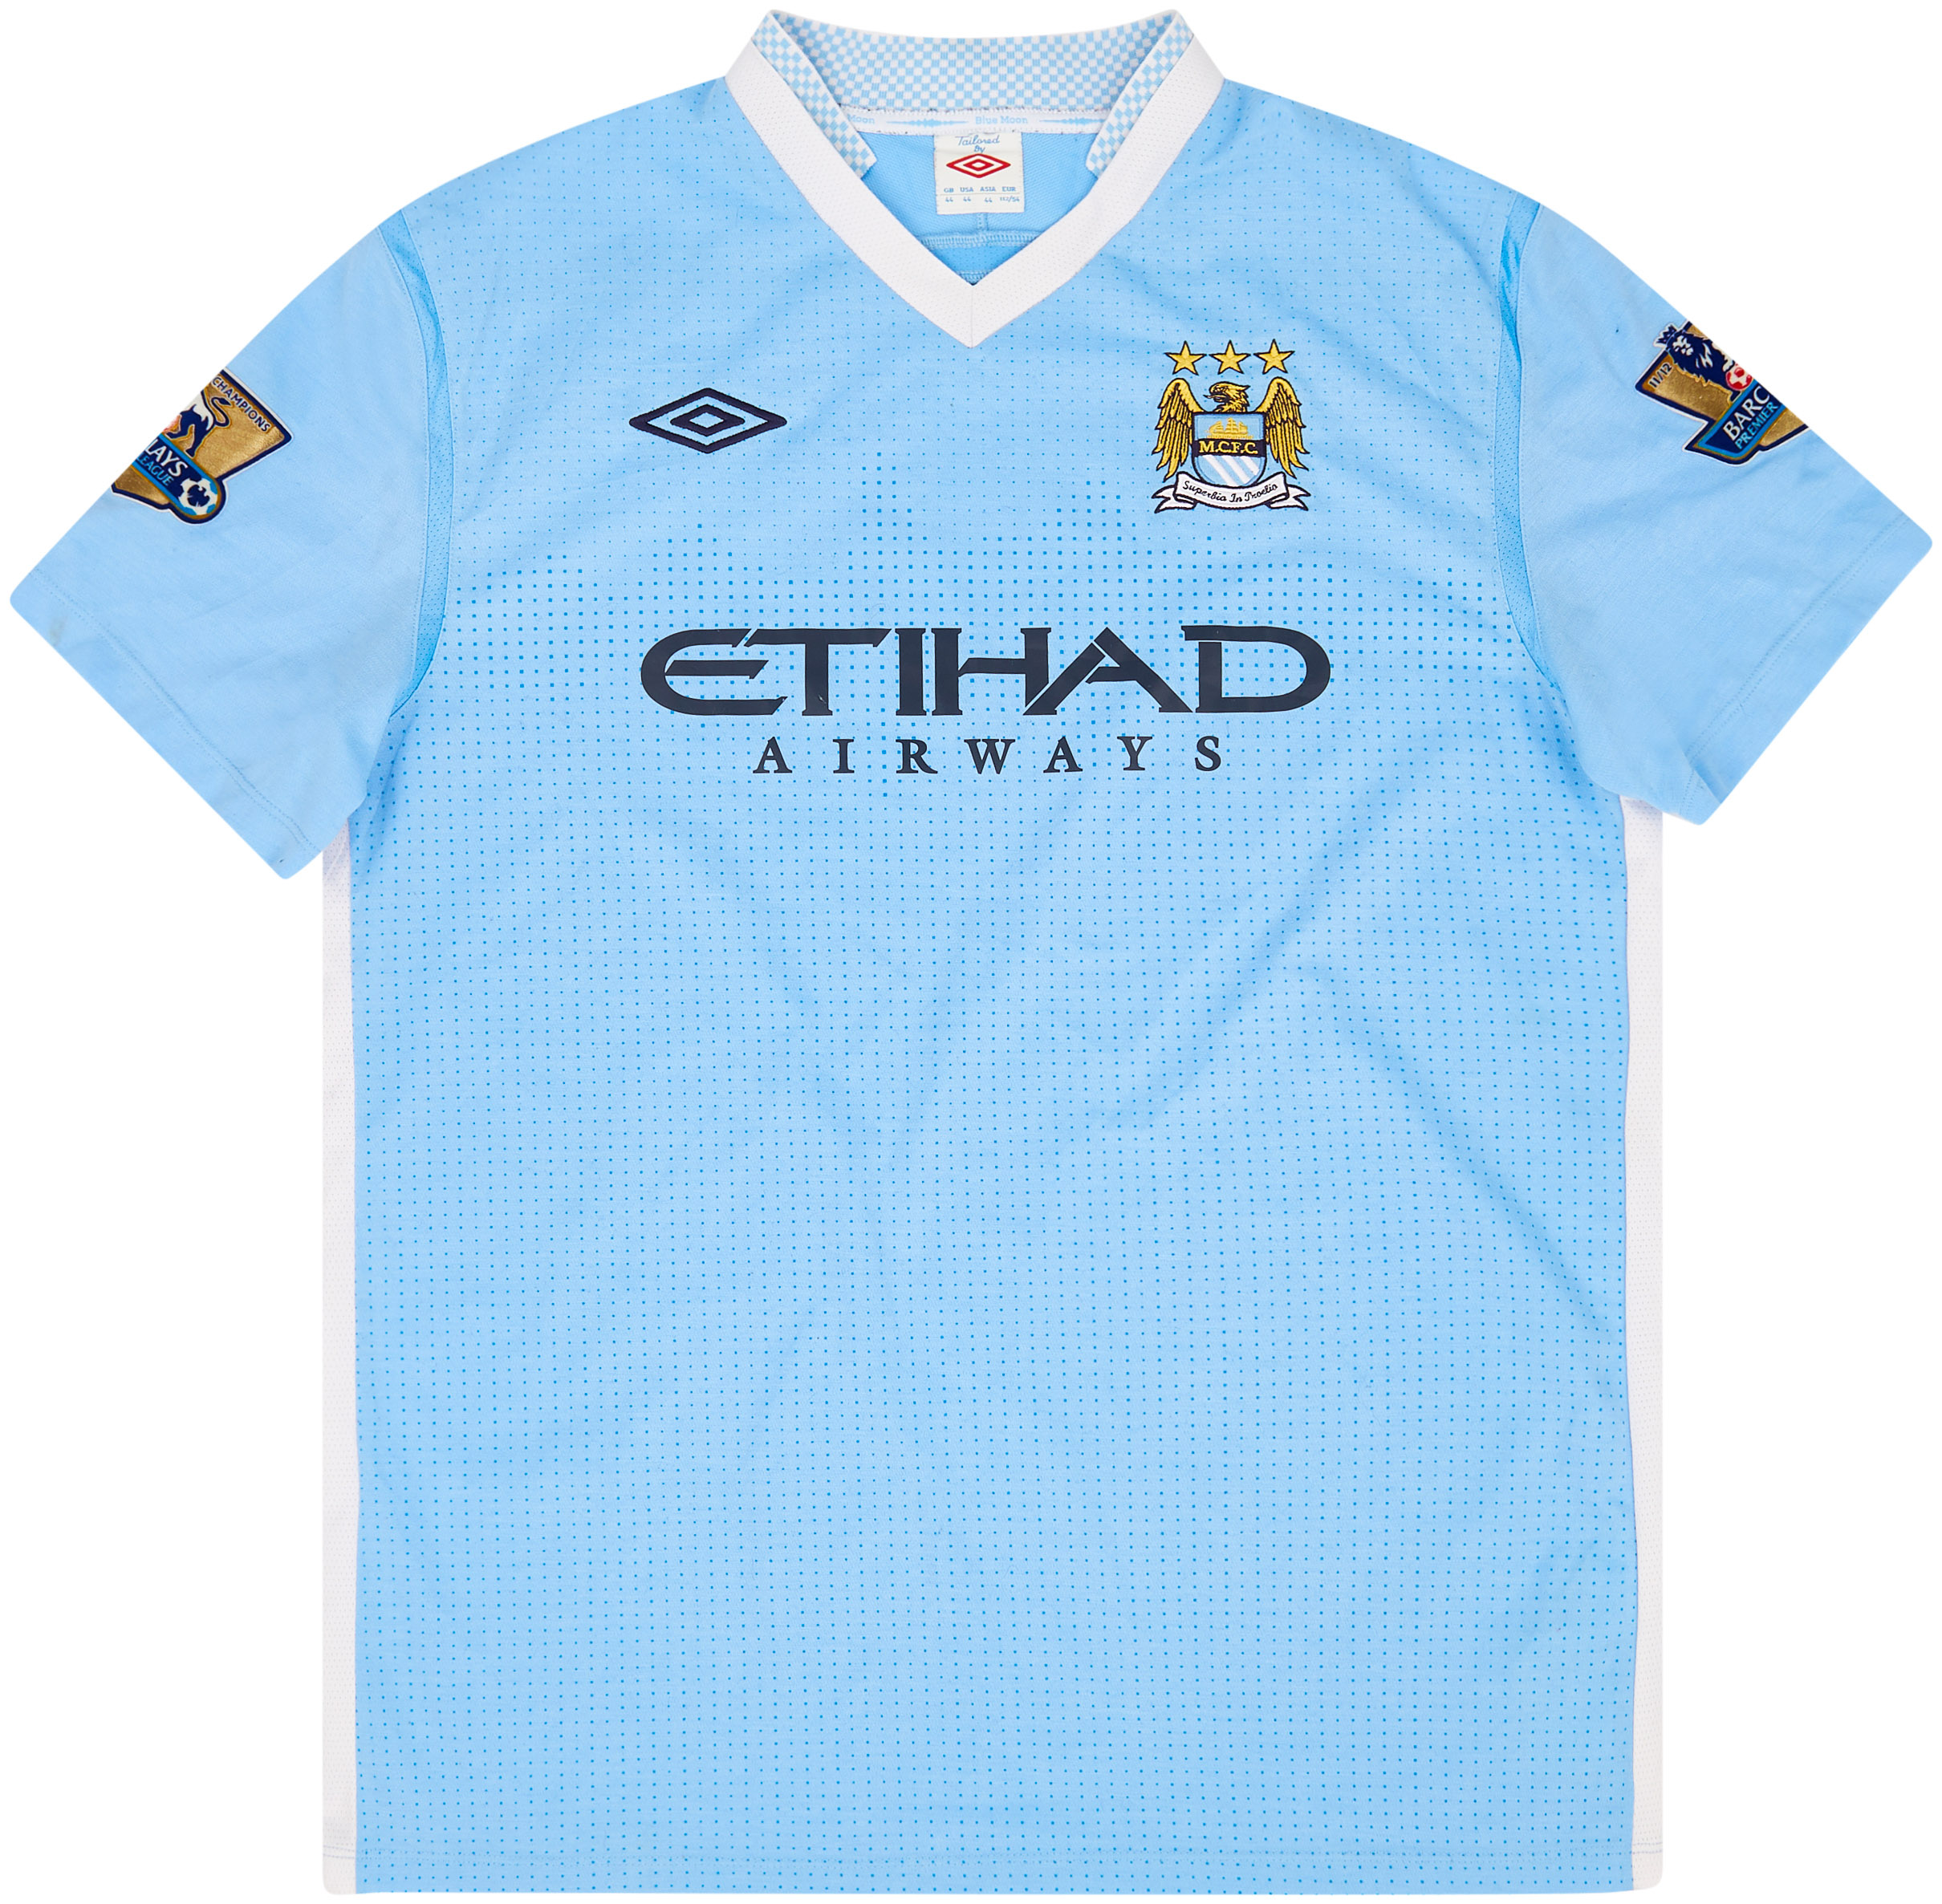 2011-12 Manchester City Home Shirt - Good - (L)